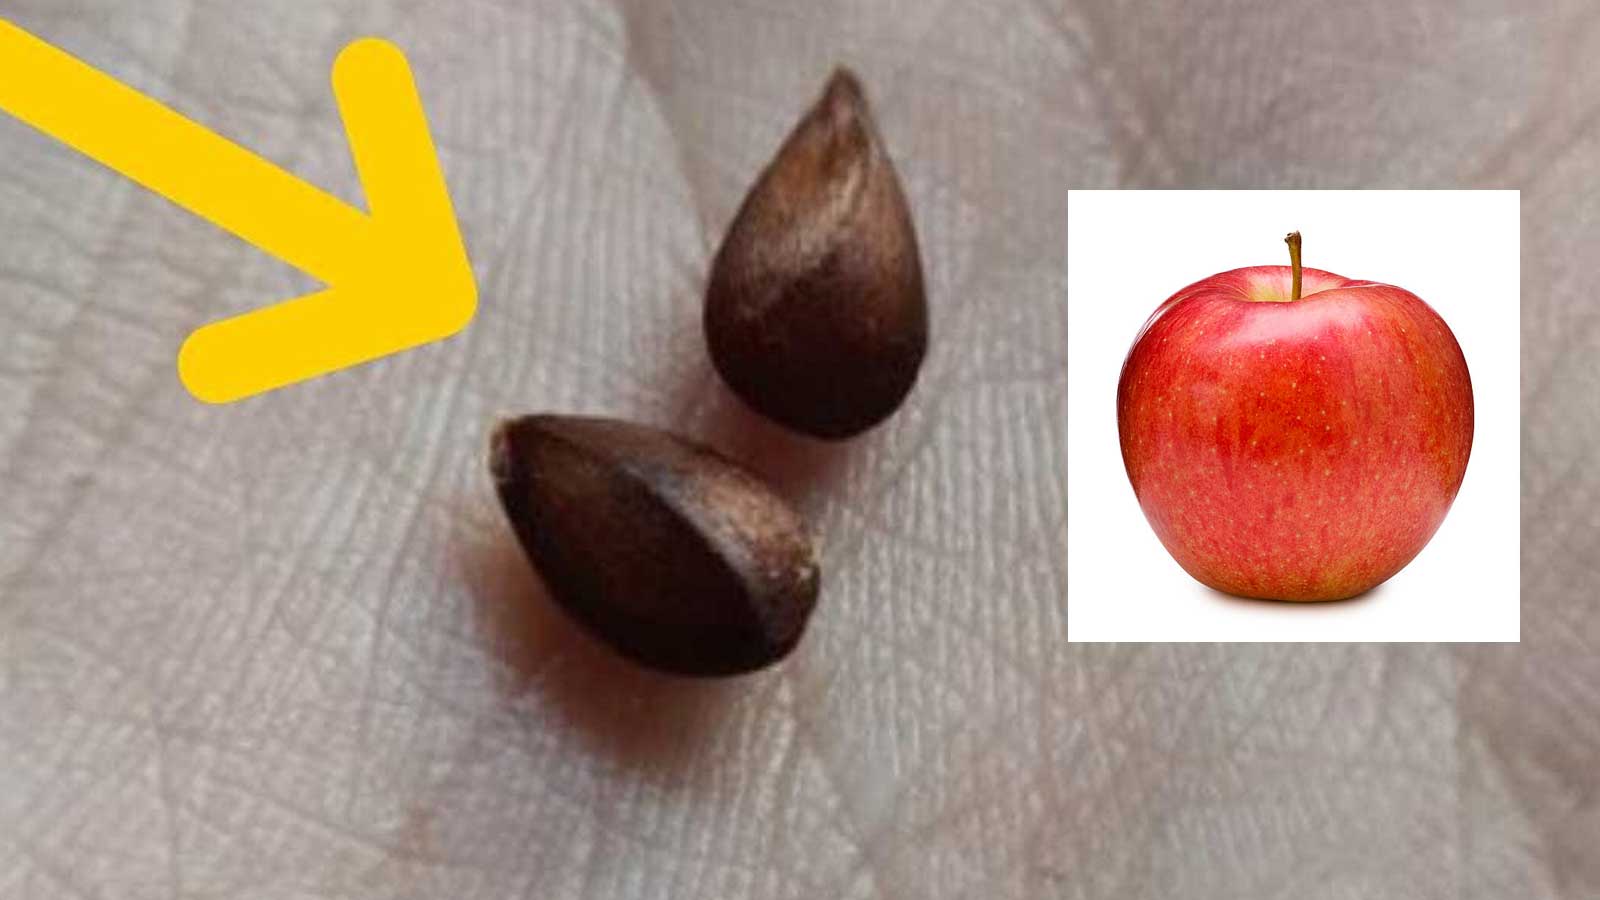 Οι Σπόροι Του Μήλου Δεν Πρέπει Ποτέ να Τρώγονται: Είναι Δηλητηριώδεις